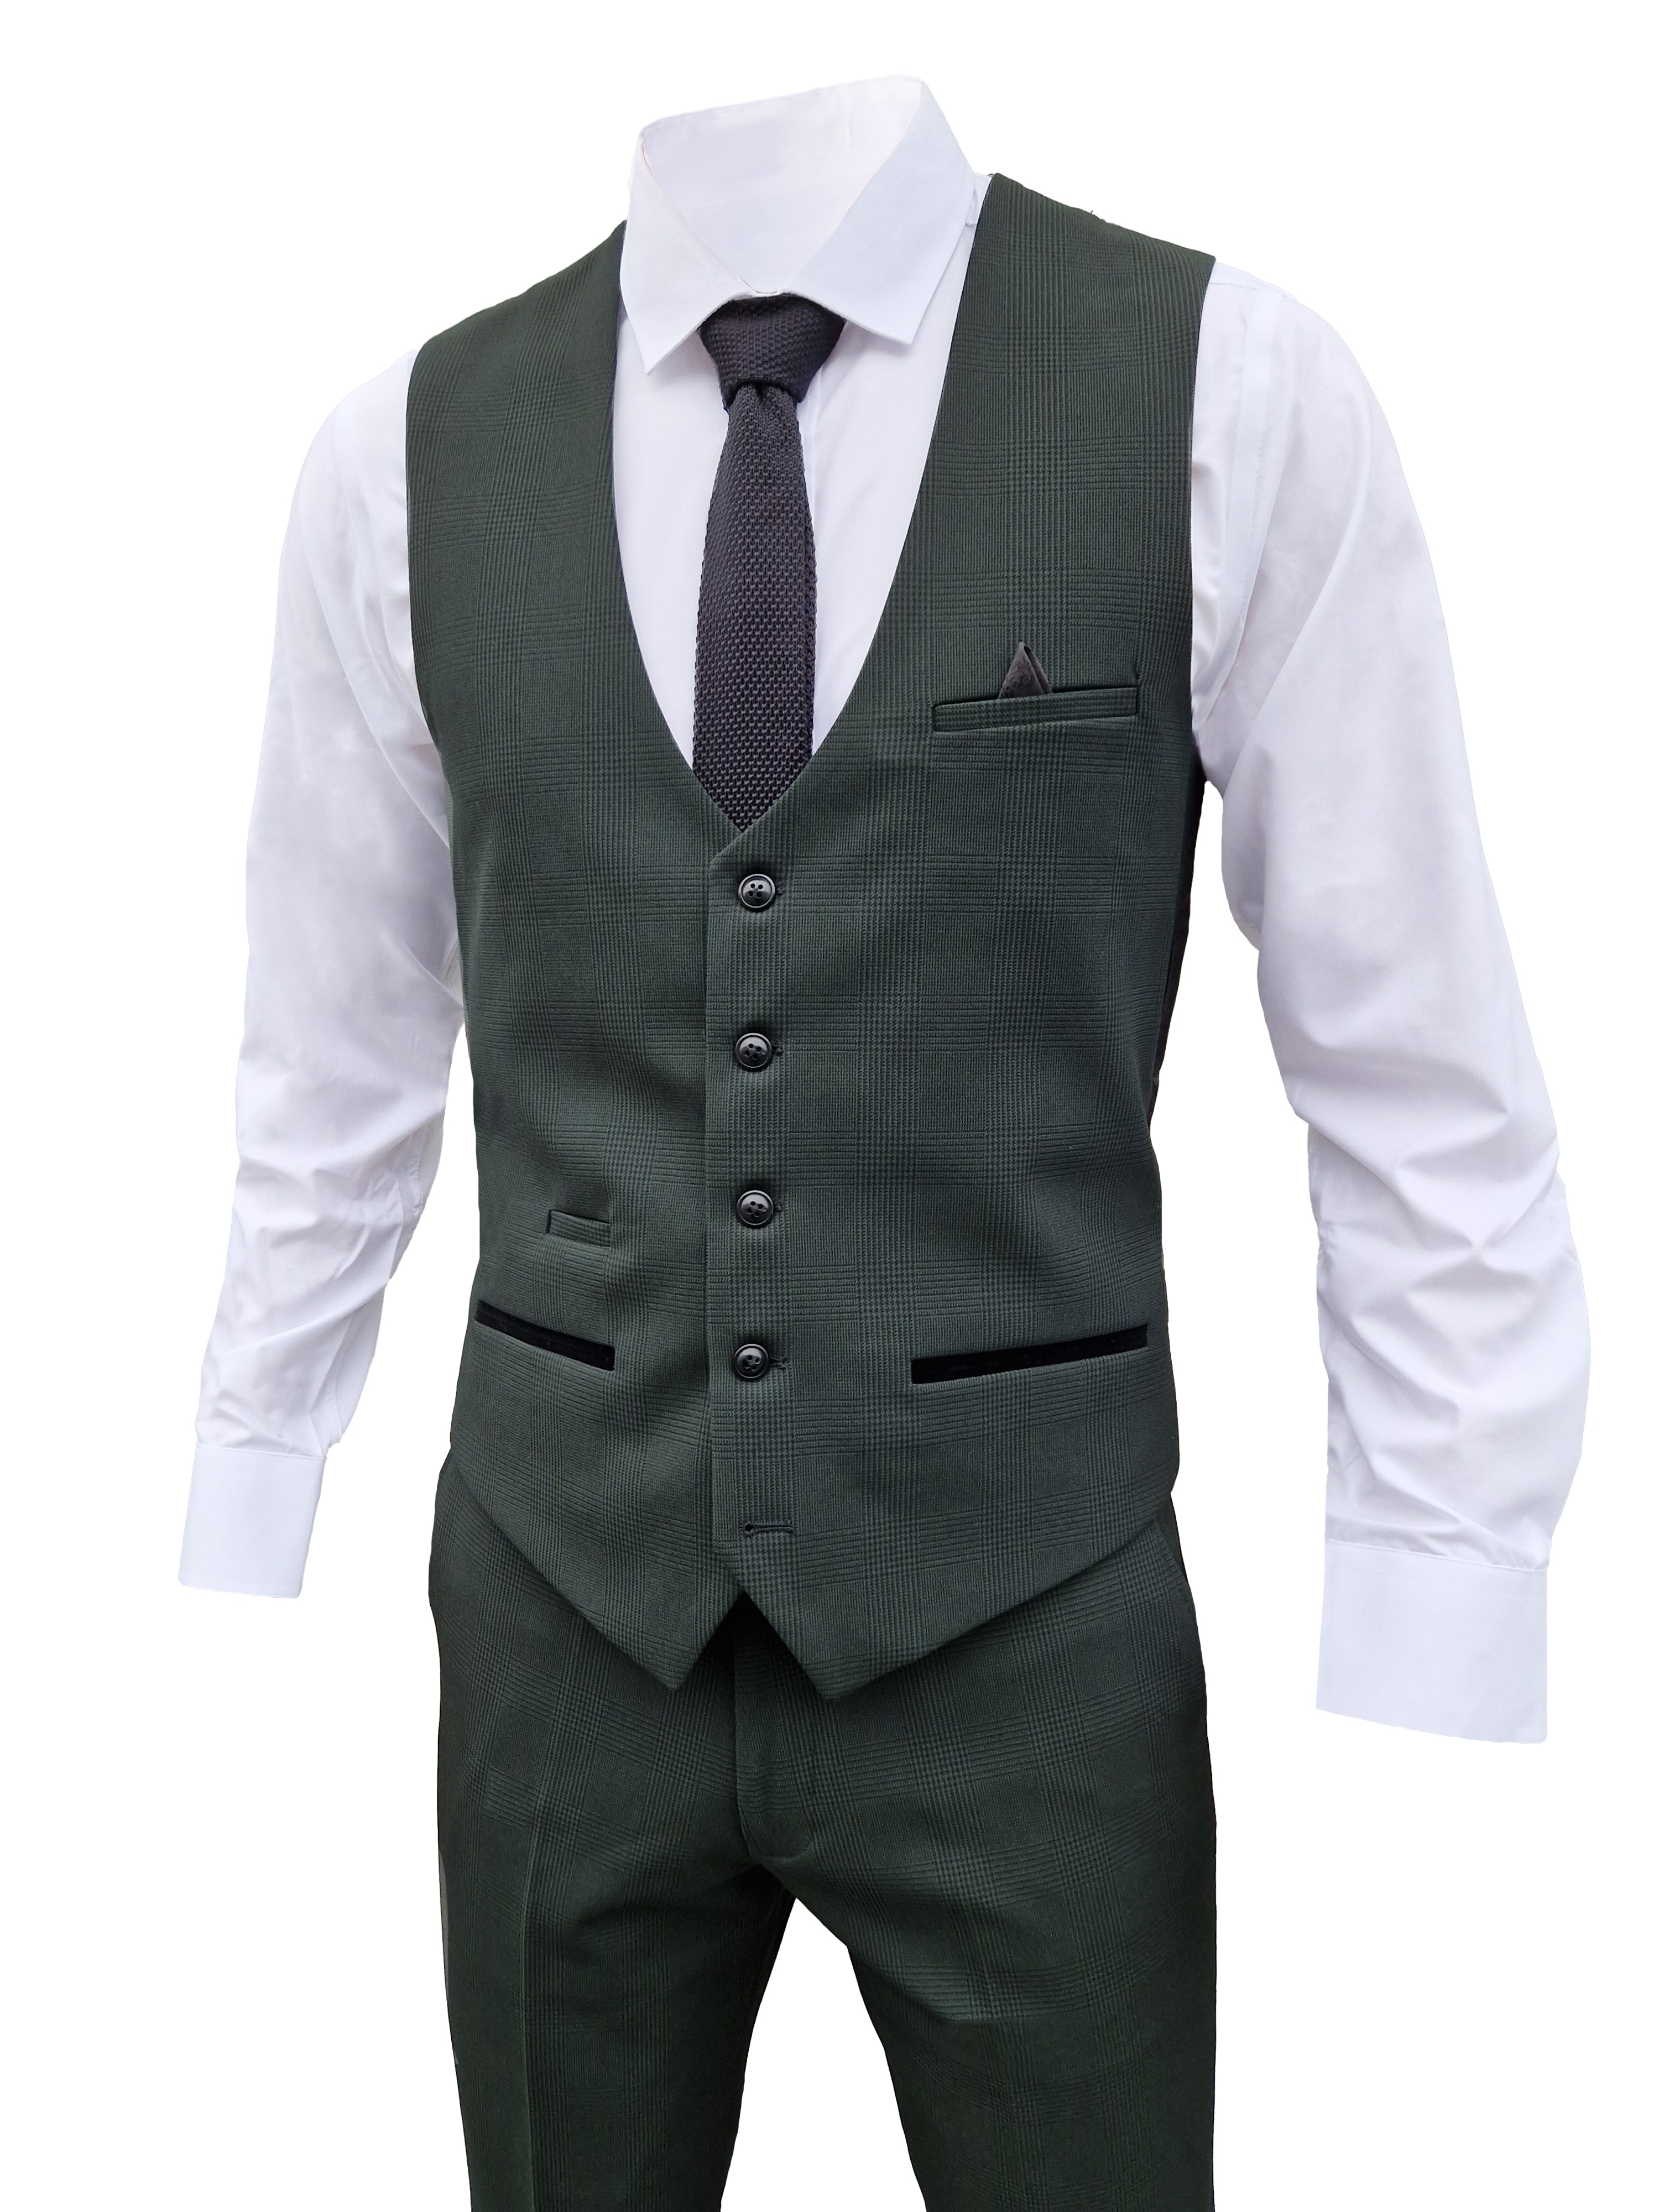 Completo da uomo a tre pezzi verde oliva a quadri - Marc Darcy Bromley Olive suit